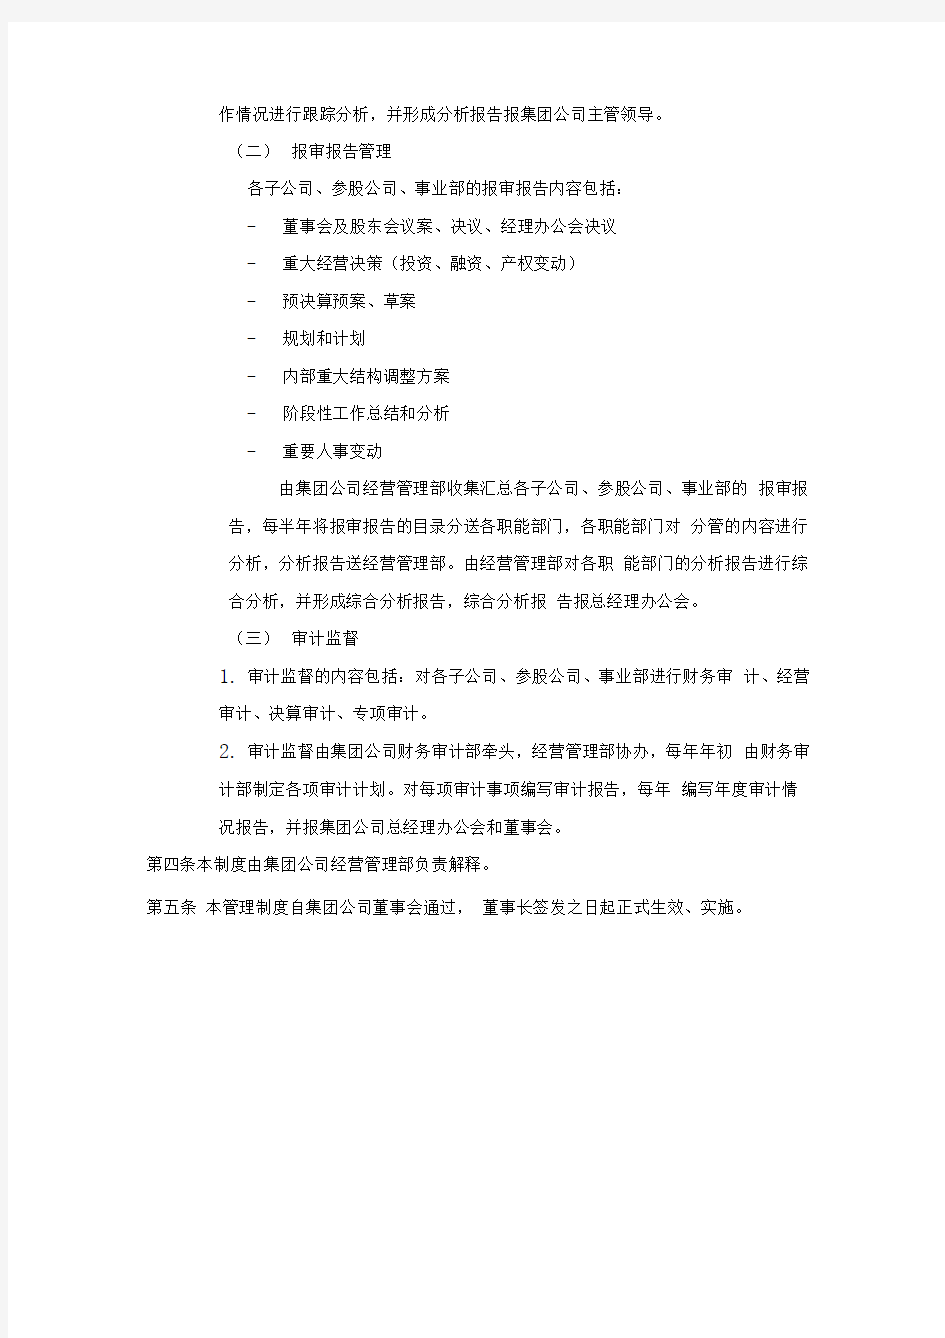 黑龙江辰能集团公司运营监控管理制度